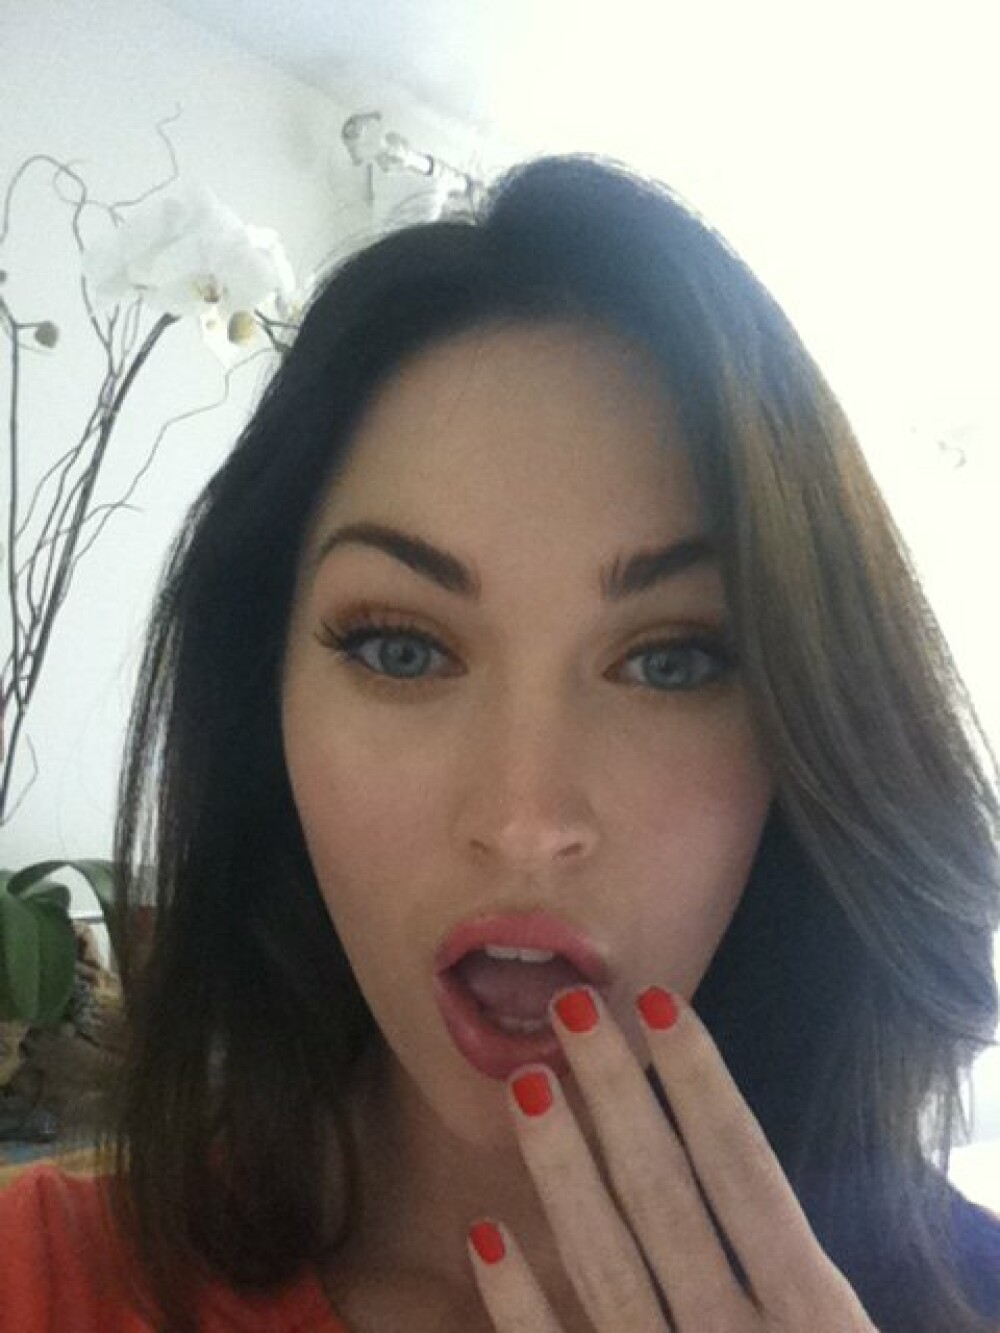 Ce a vrut Megan Fox sa demonstreze cu aceste poze? GALERIE FOTO - Imaginea 1